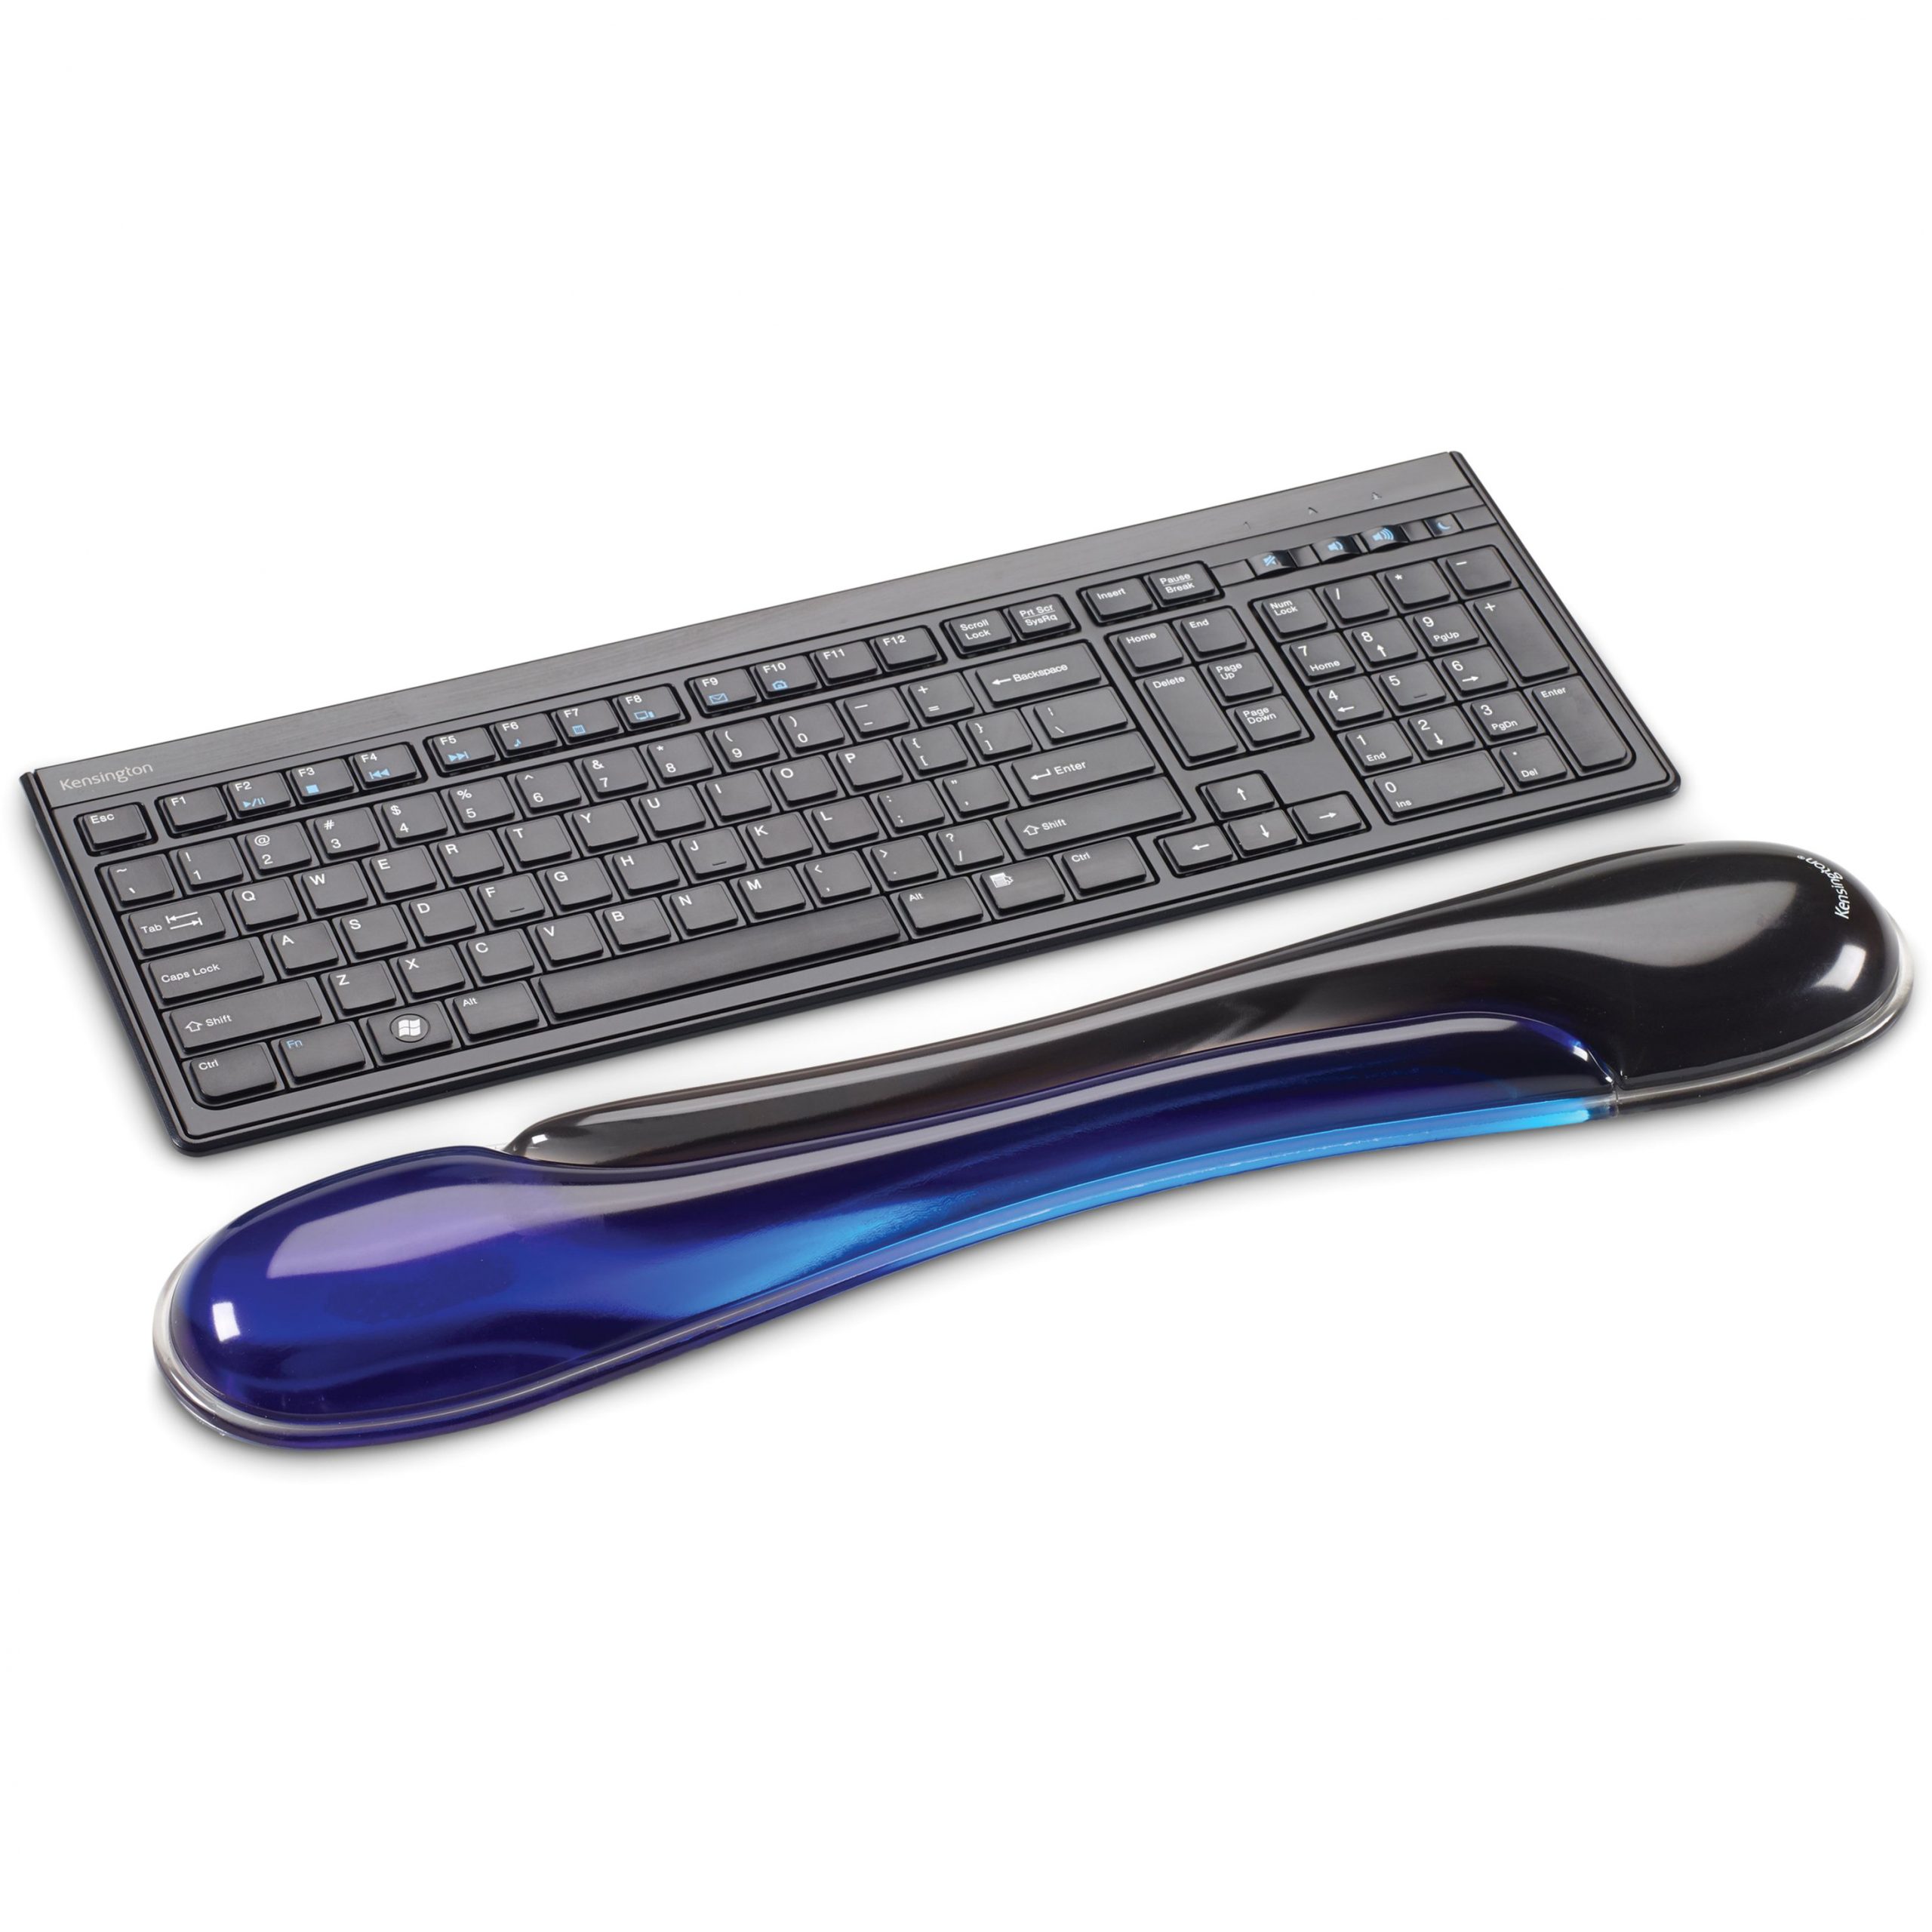 Kensington Duo Gel Keyboard Wrist RestBlueBlack & BlueGelTAA Compliant K62397AM